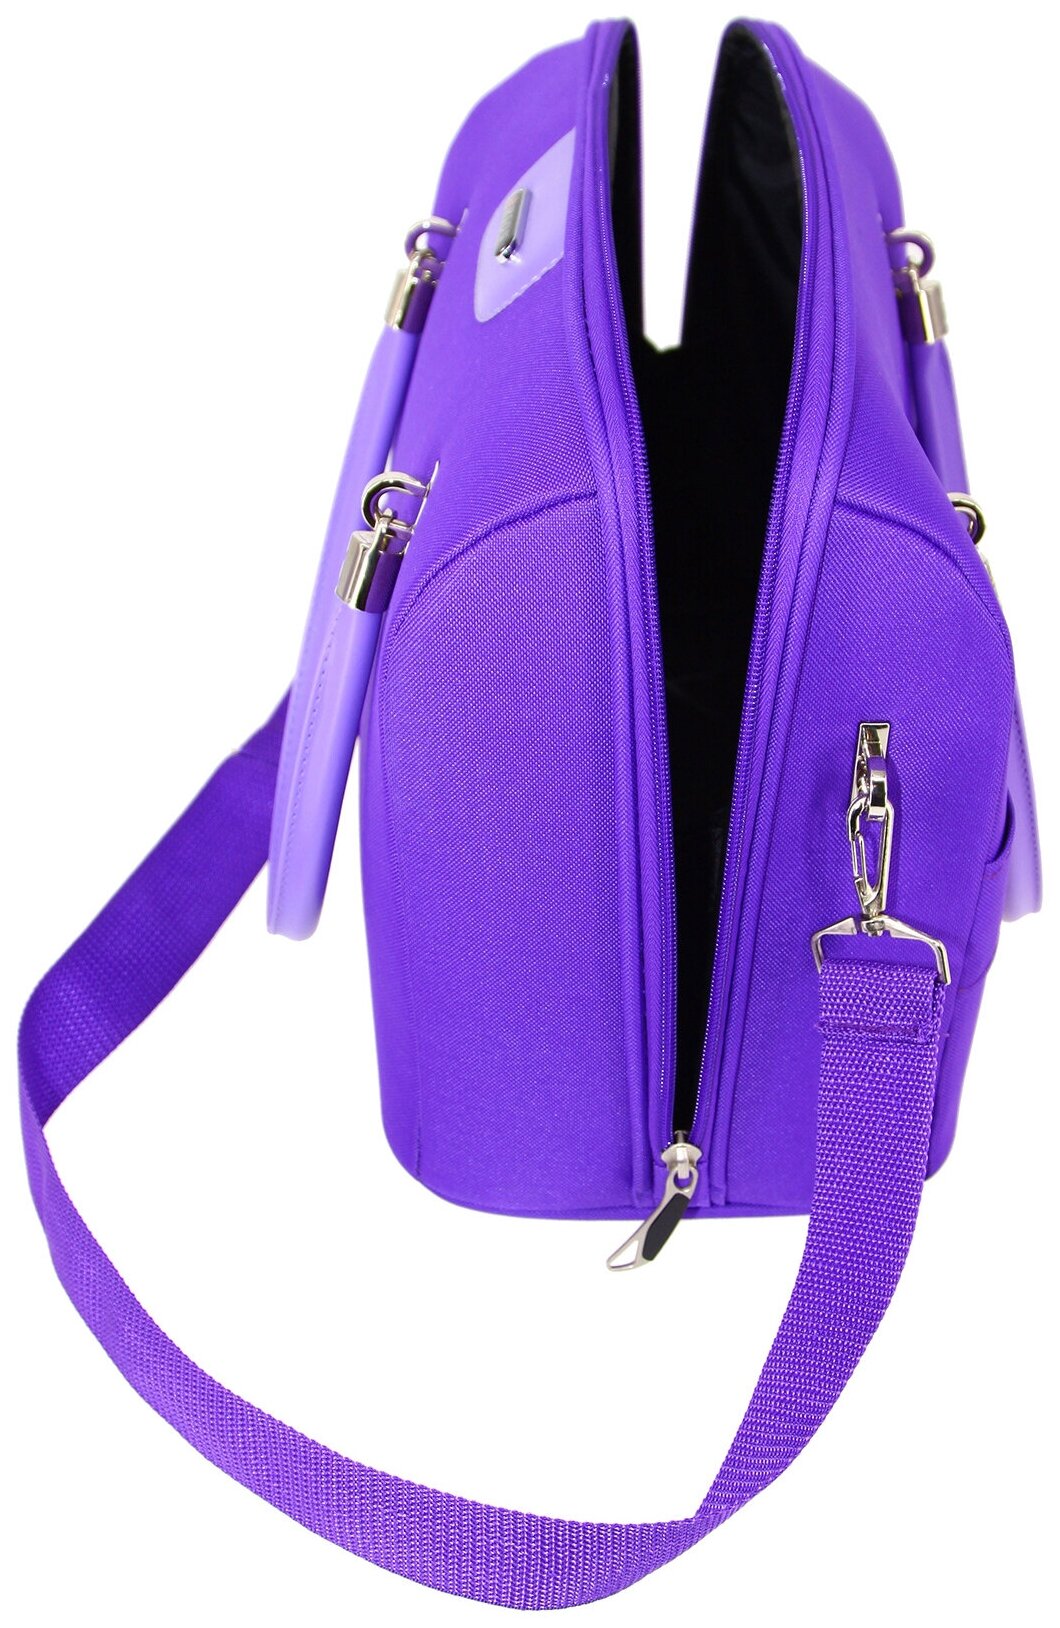 Дорожная сумка с ремнем на ручку чемодана Рион+ (RION+) / ручная кладь для самолета / саквояж , R240, Тканевая, 20 литров, фиолетовый - фотография № 5